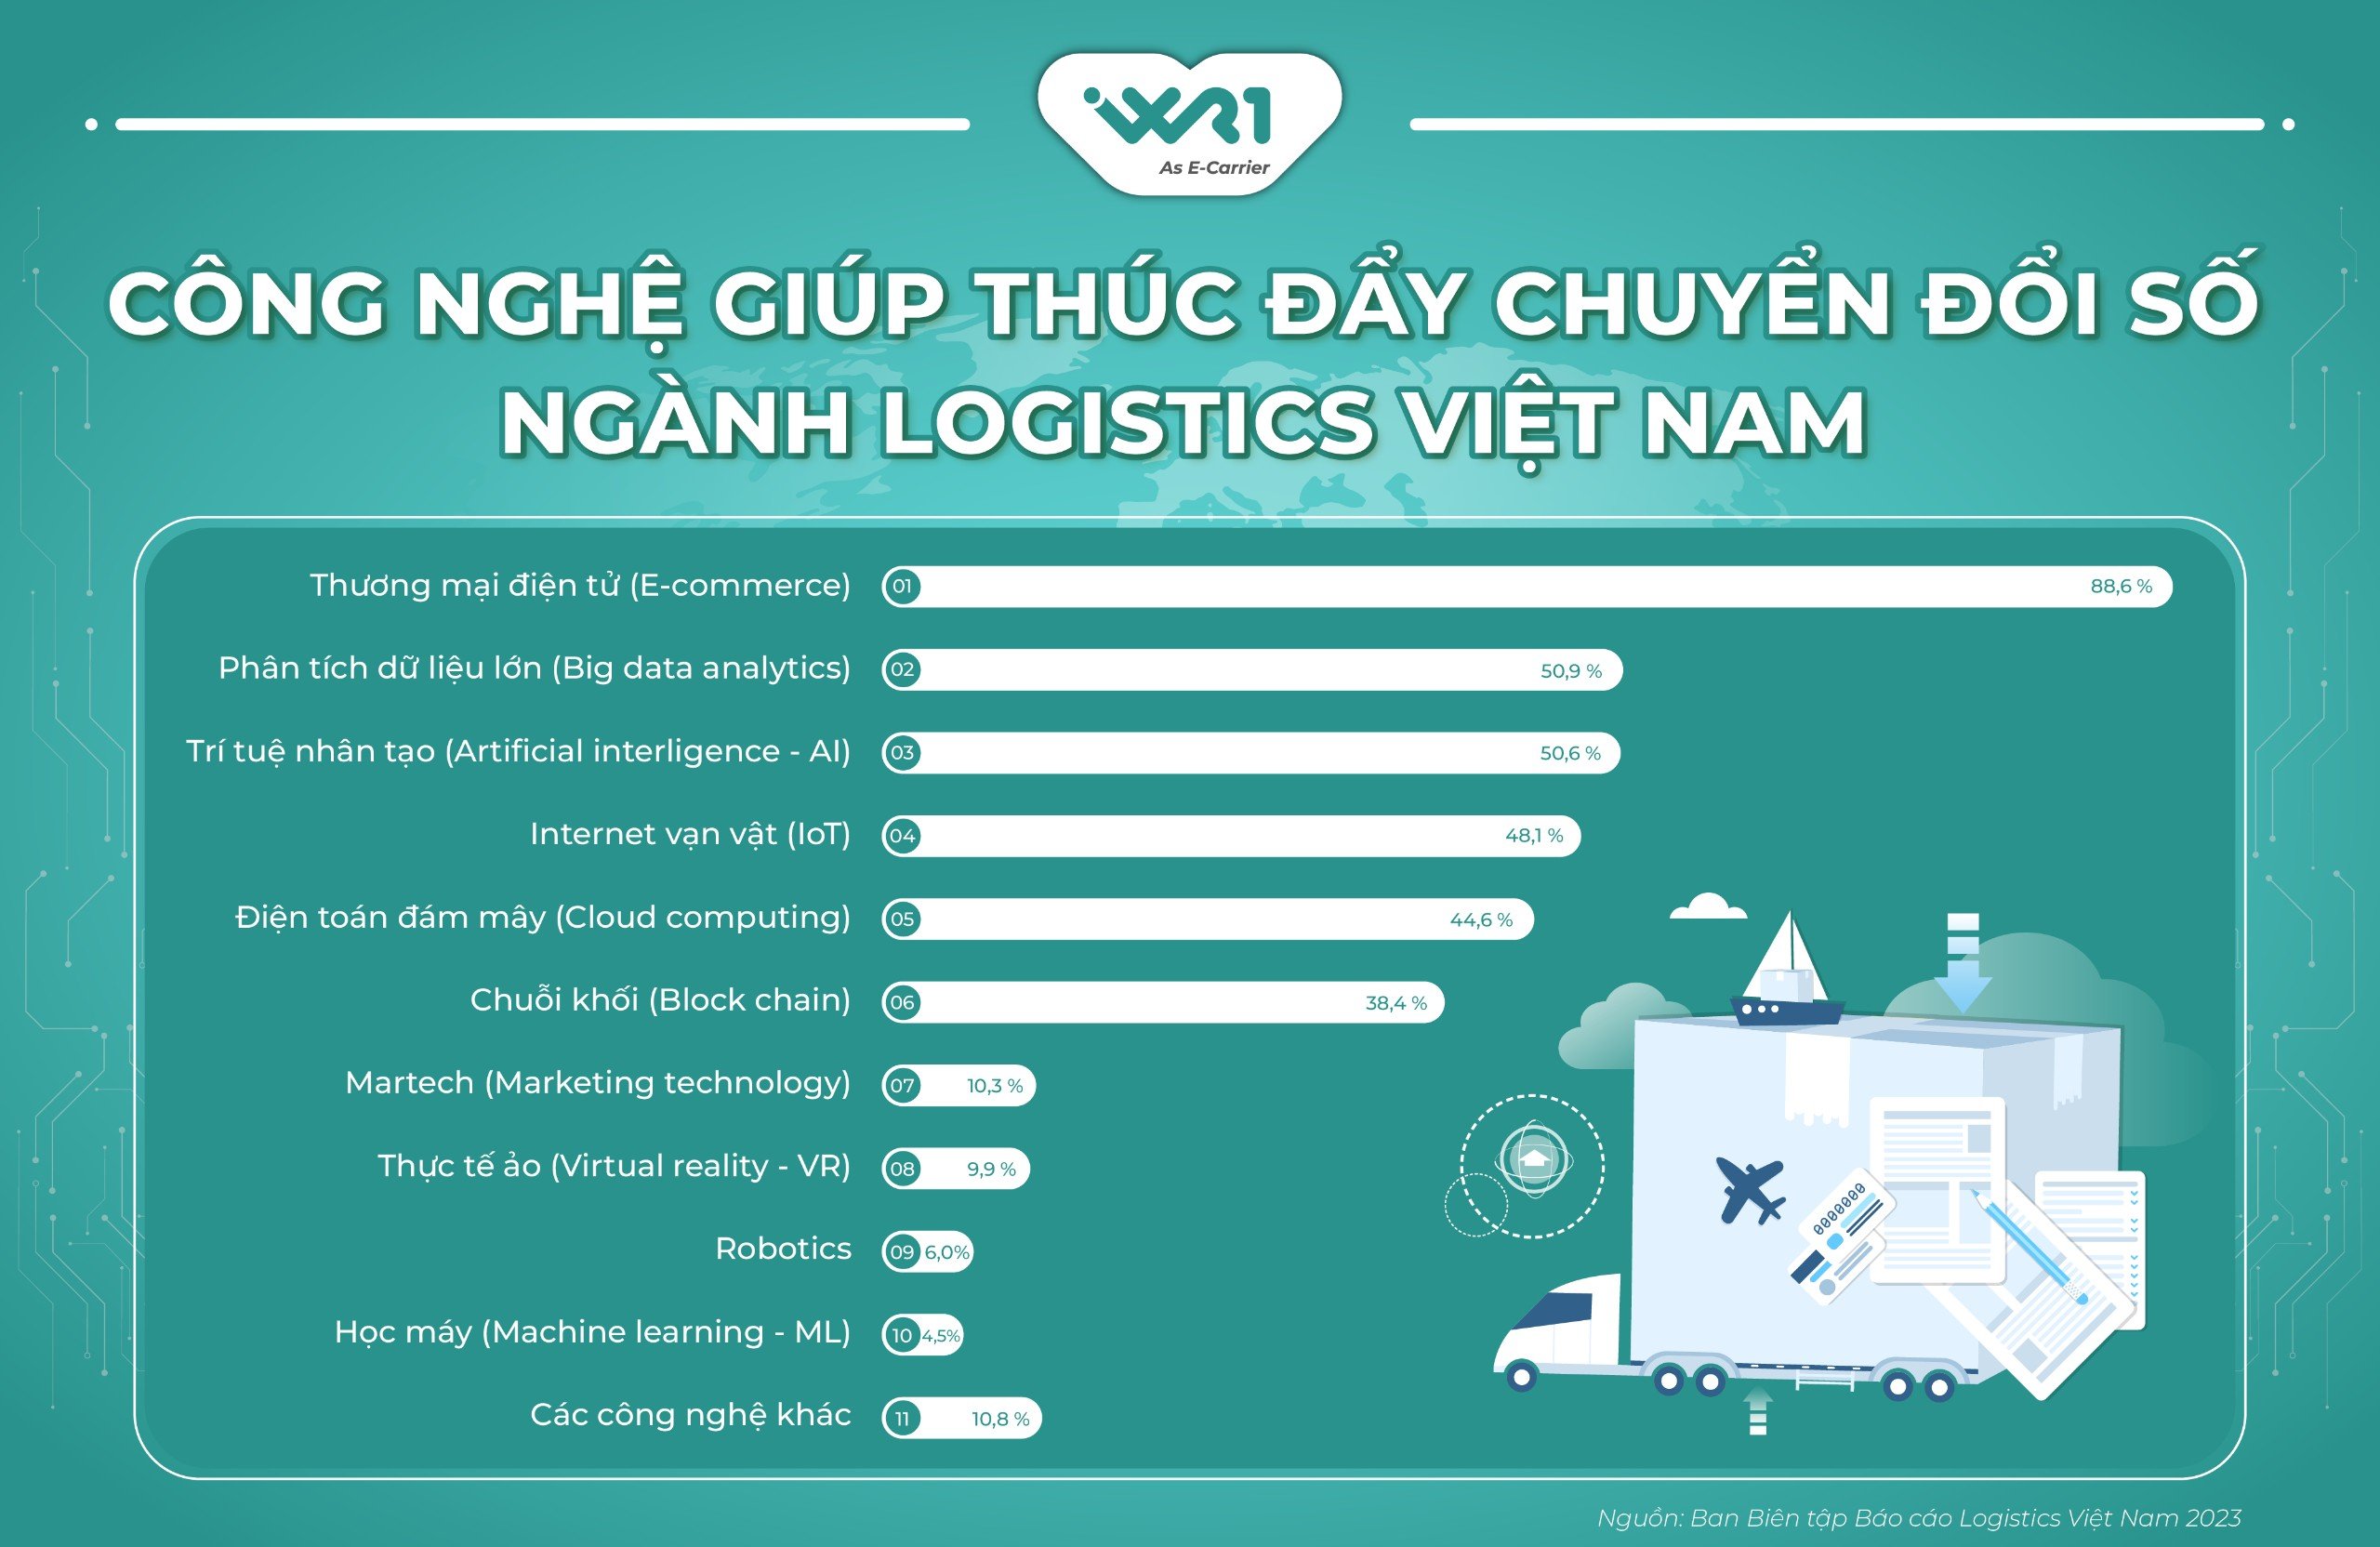 Xu hướng chuyển đổi số ngành logistics tại Việt Nam